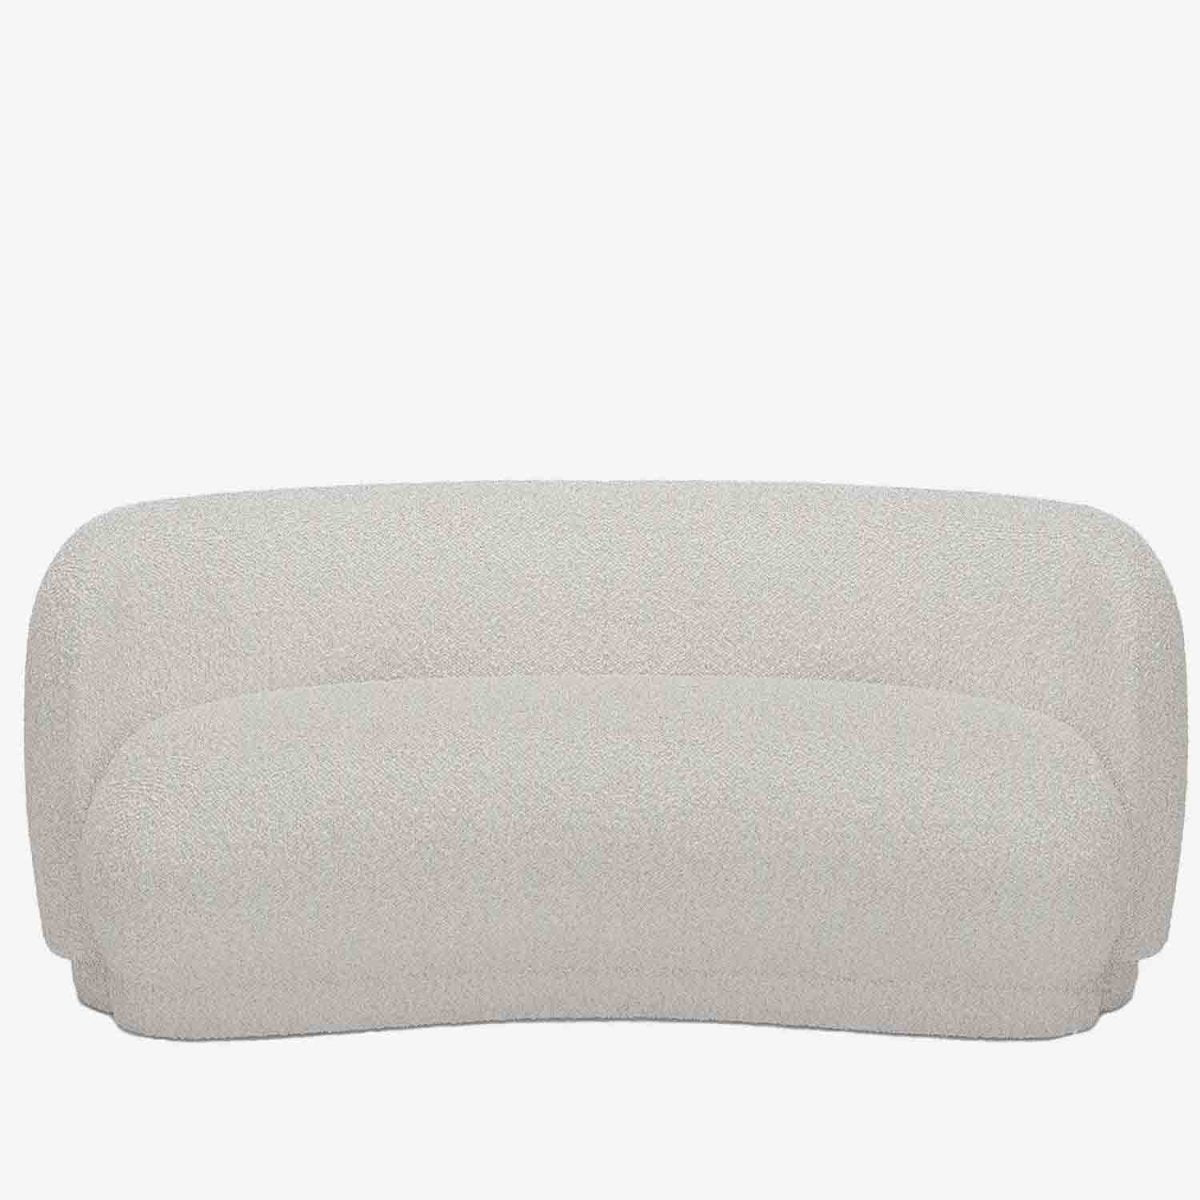 Grand canapé incurvé blanc tissu bouclette - Potiron Paris, les canapés design de qualité pas chers